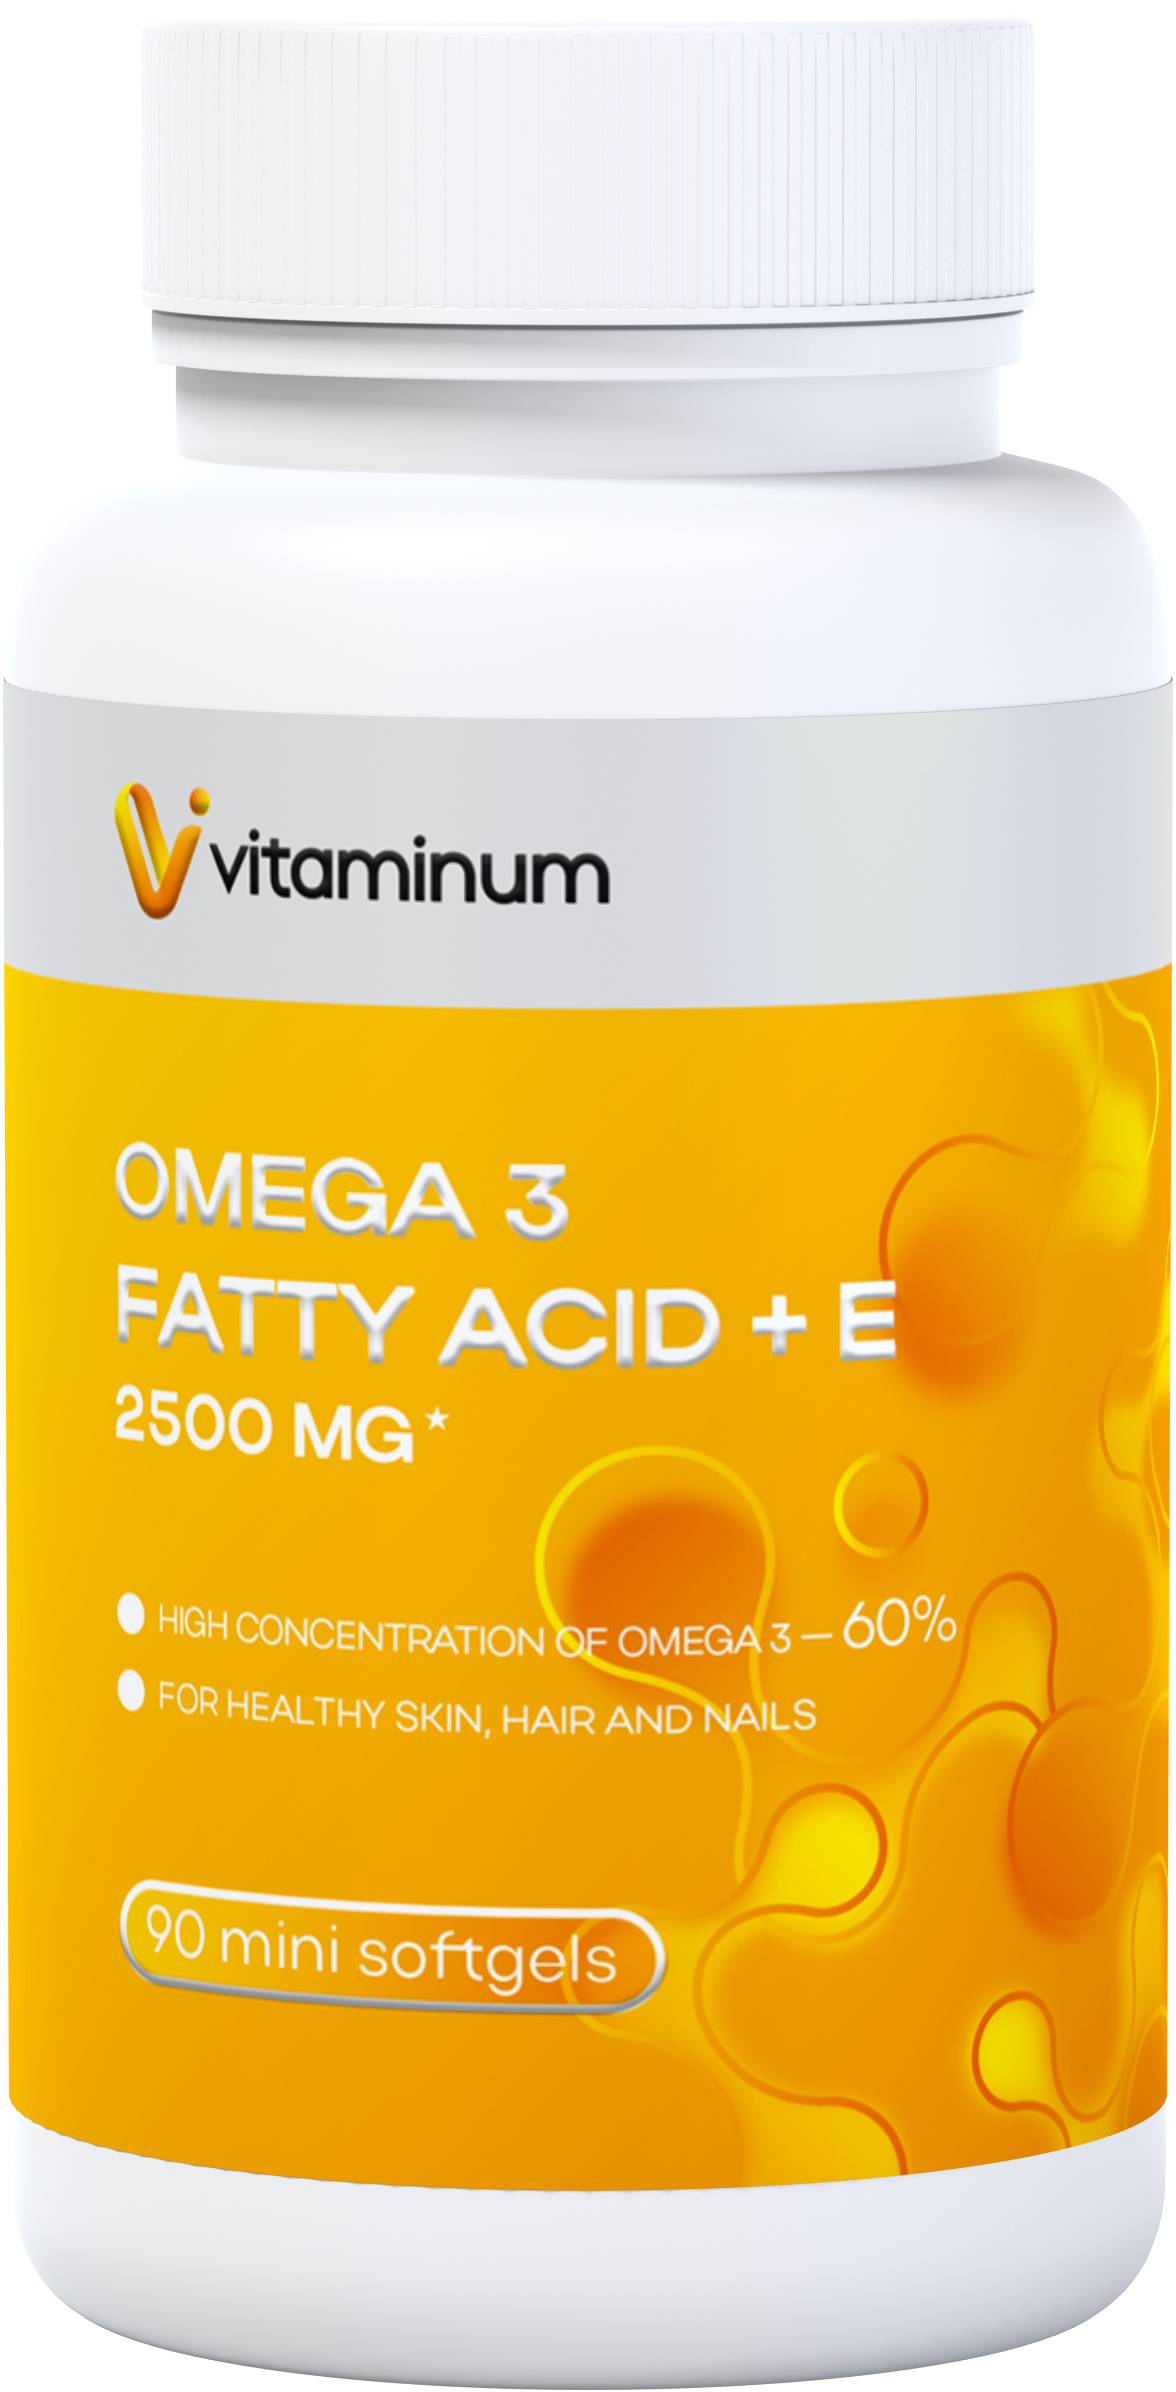  Vitaminum ОМЕГА 3 60% + витамин Е (2500 MG*) 90 капсул 700 мг   в Уссурийске